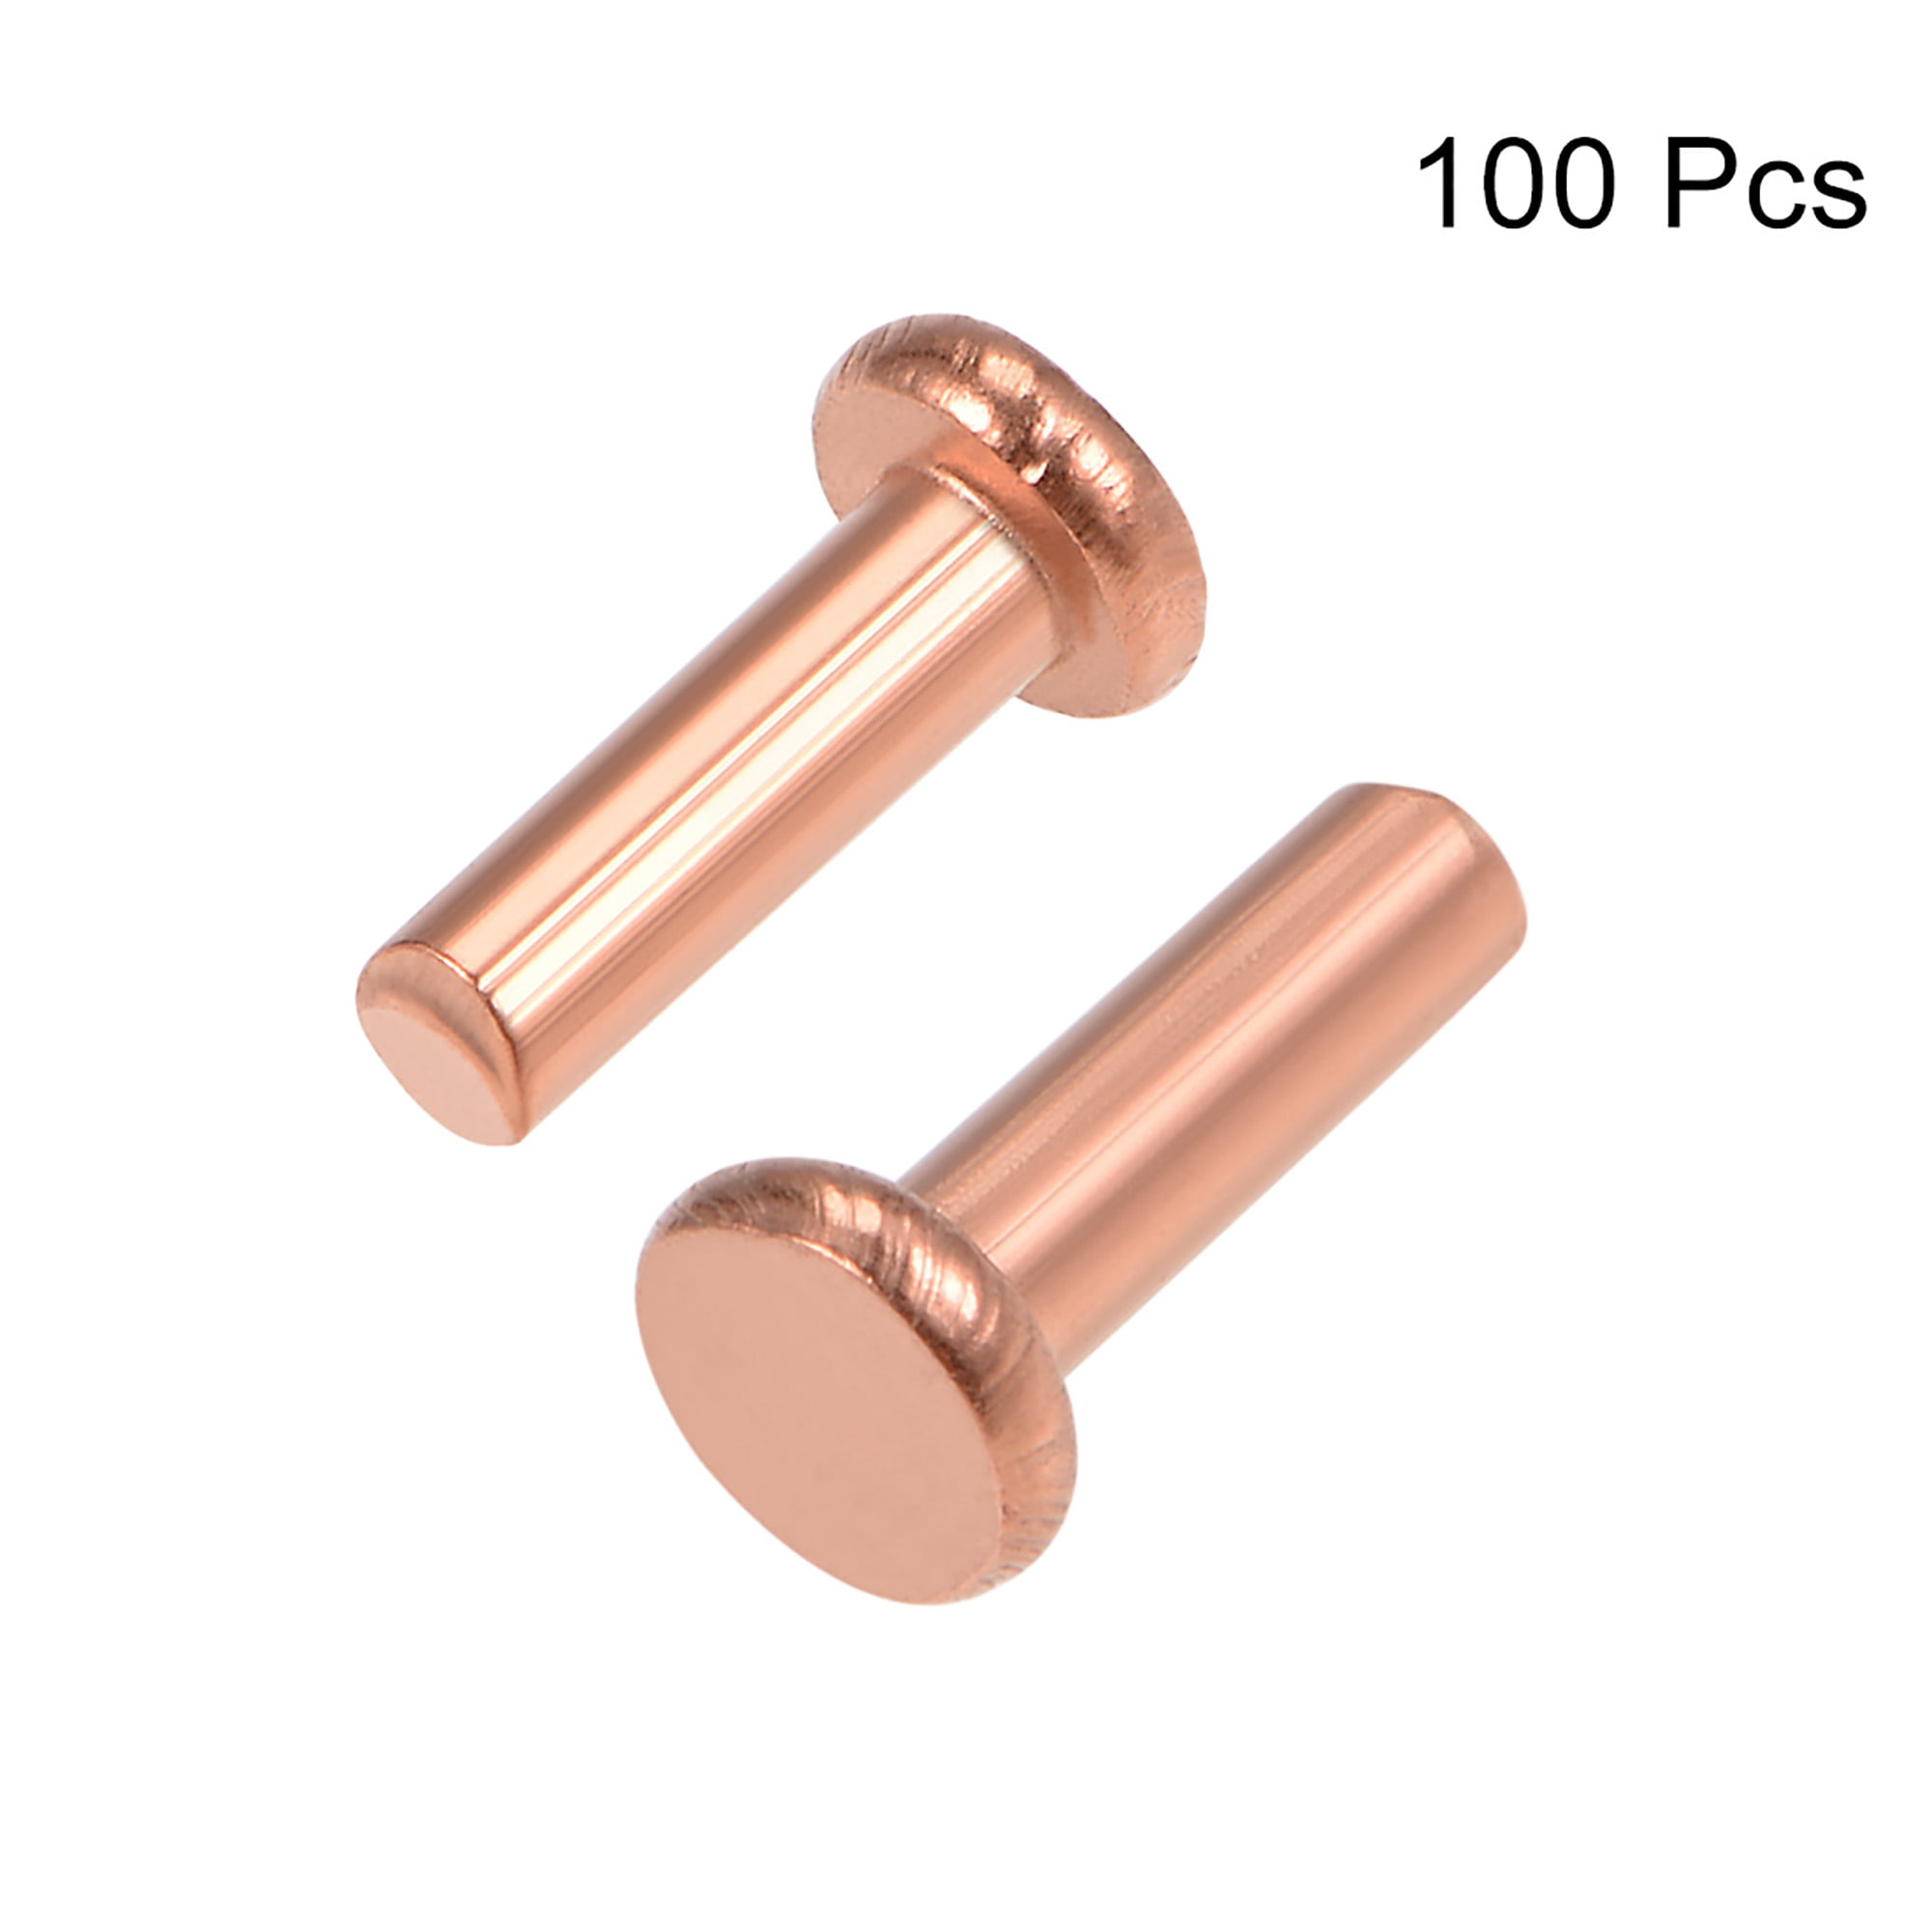 100 Pcs 5/64" x 15/64" Flat Head Copper Solid Rivets Fasteners 